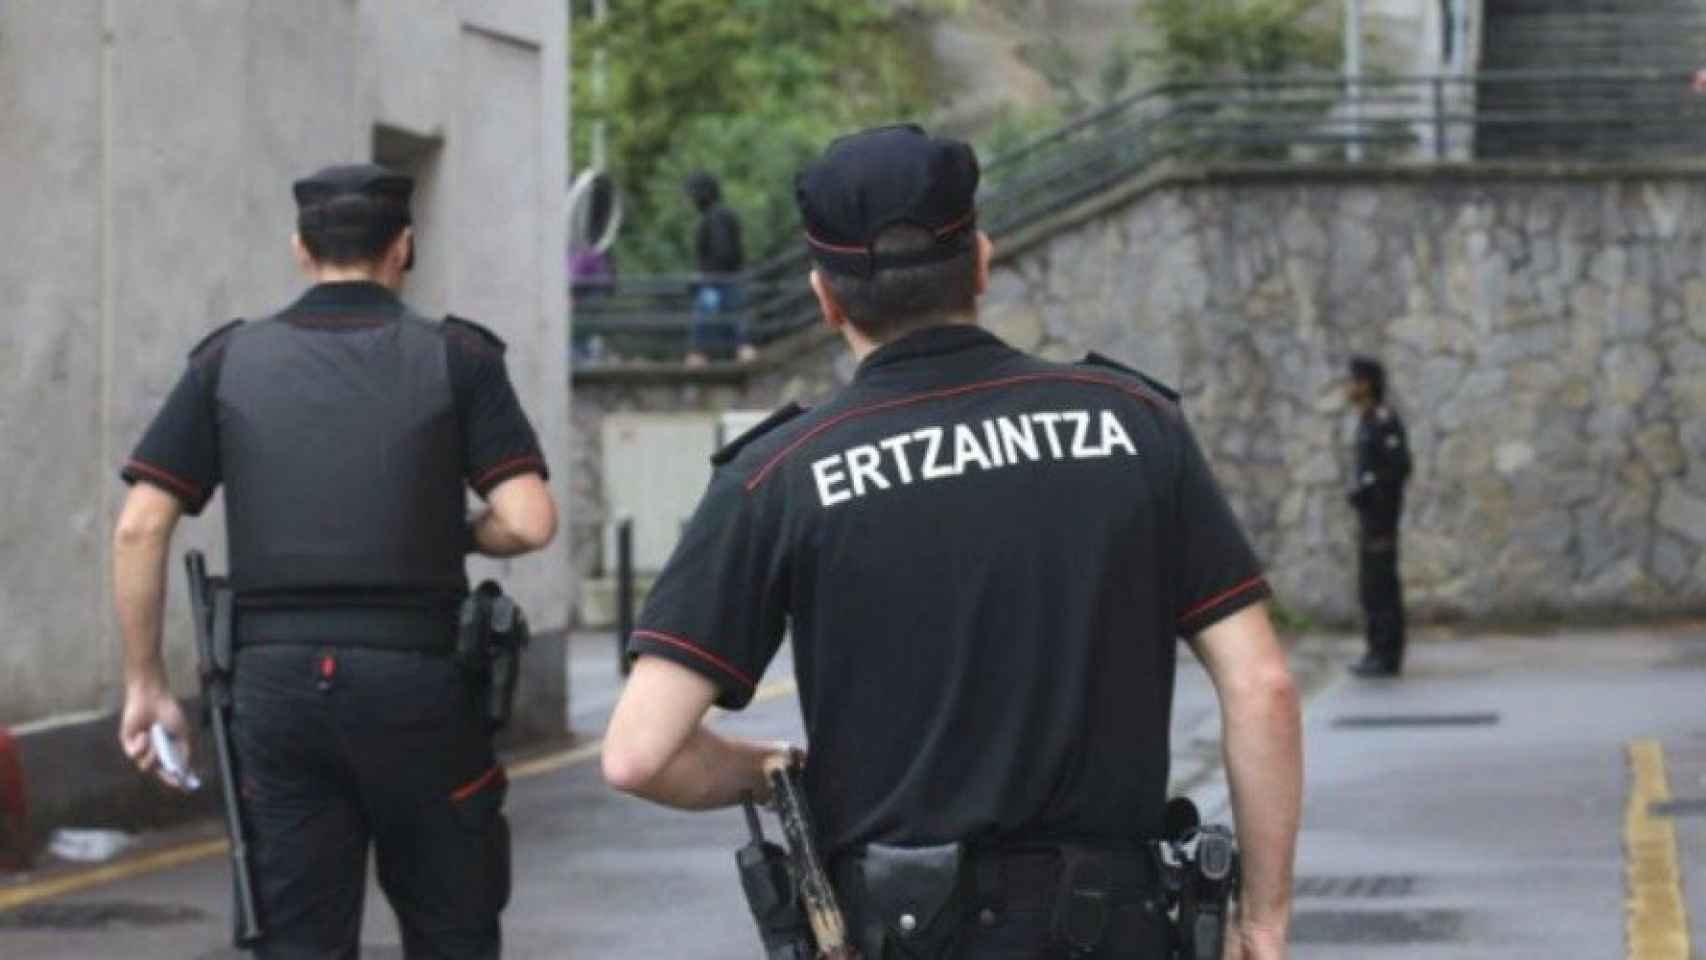 Dos agentes de la Ertzaintza.